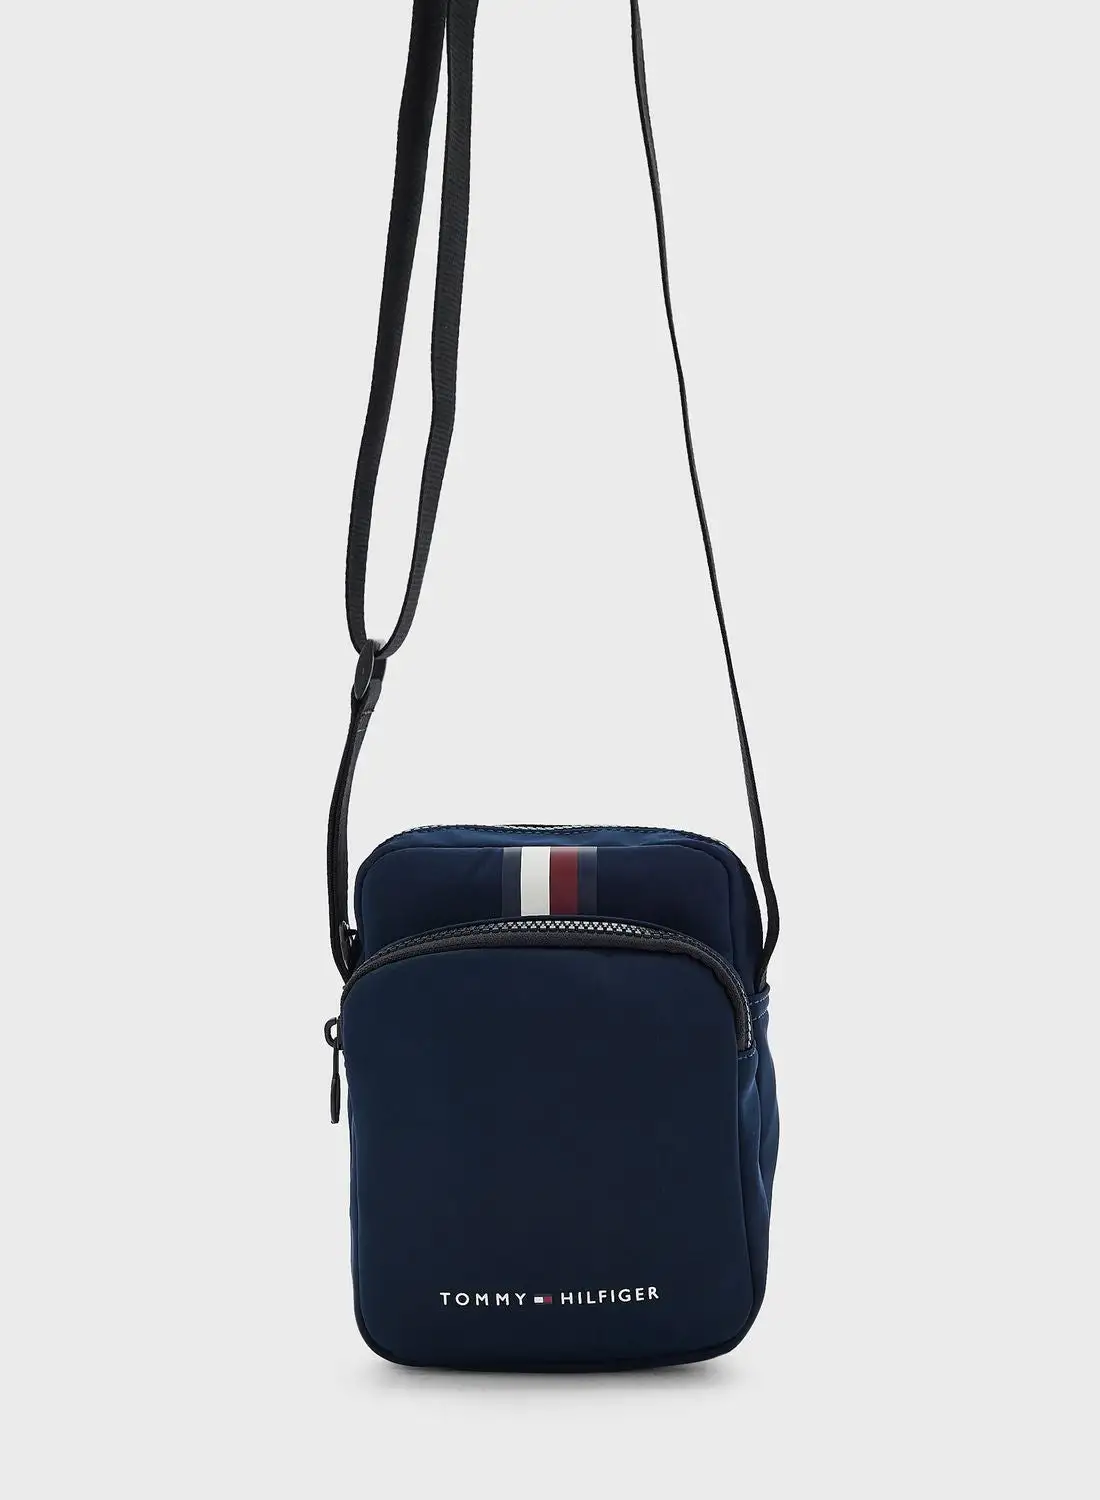 حقيبة تومي هيلفيغر صغيرة بشعار Skyline Stripe